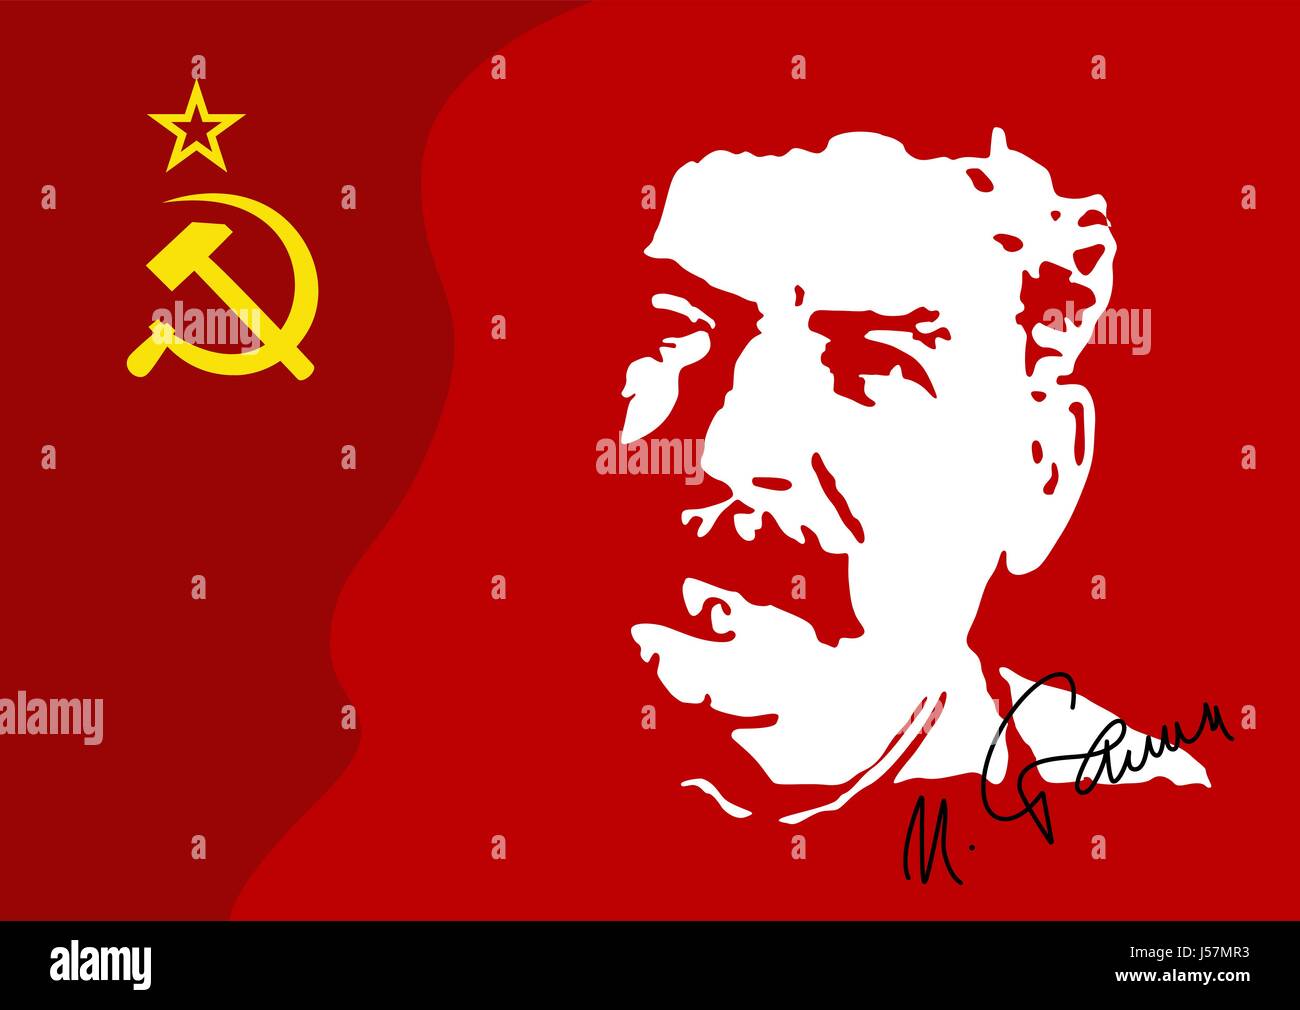 Illustrazione vettoriale di un ritratto di I.V. Stalin in Unione Sovietica bandiera rossa. Stalin è un leader militare del governo comunista della Unione sovietica del 1953. Illustrazione Vettoriale